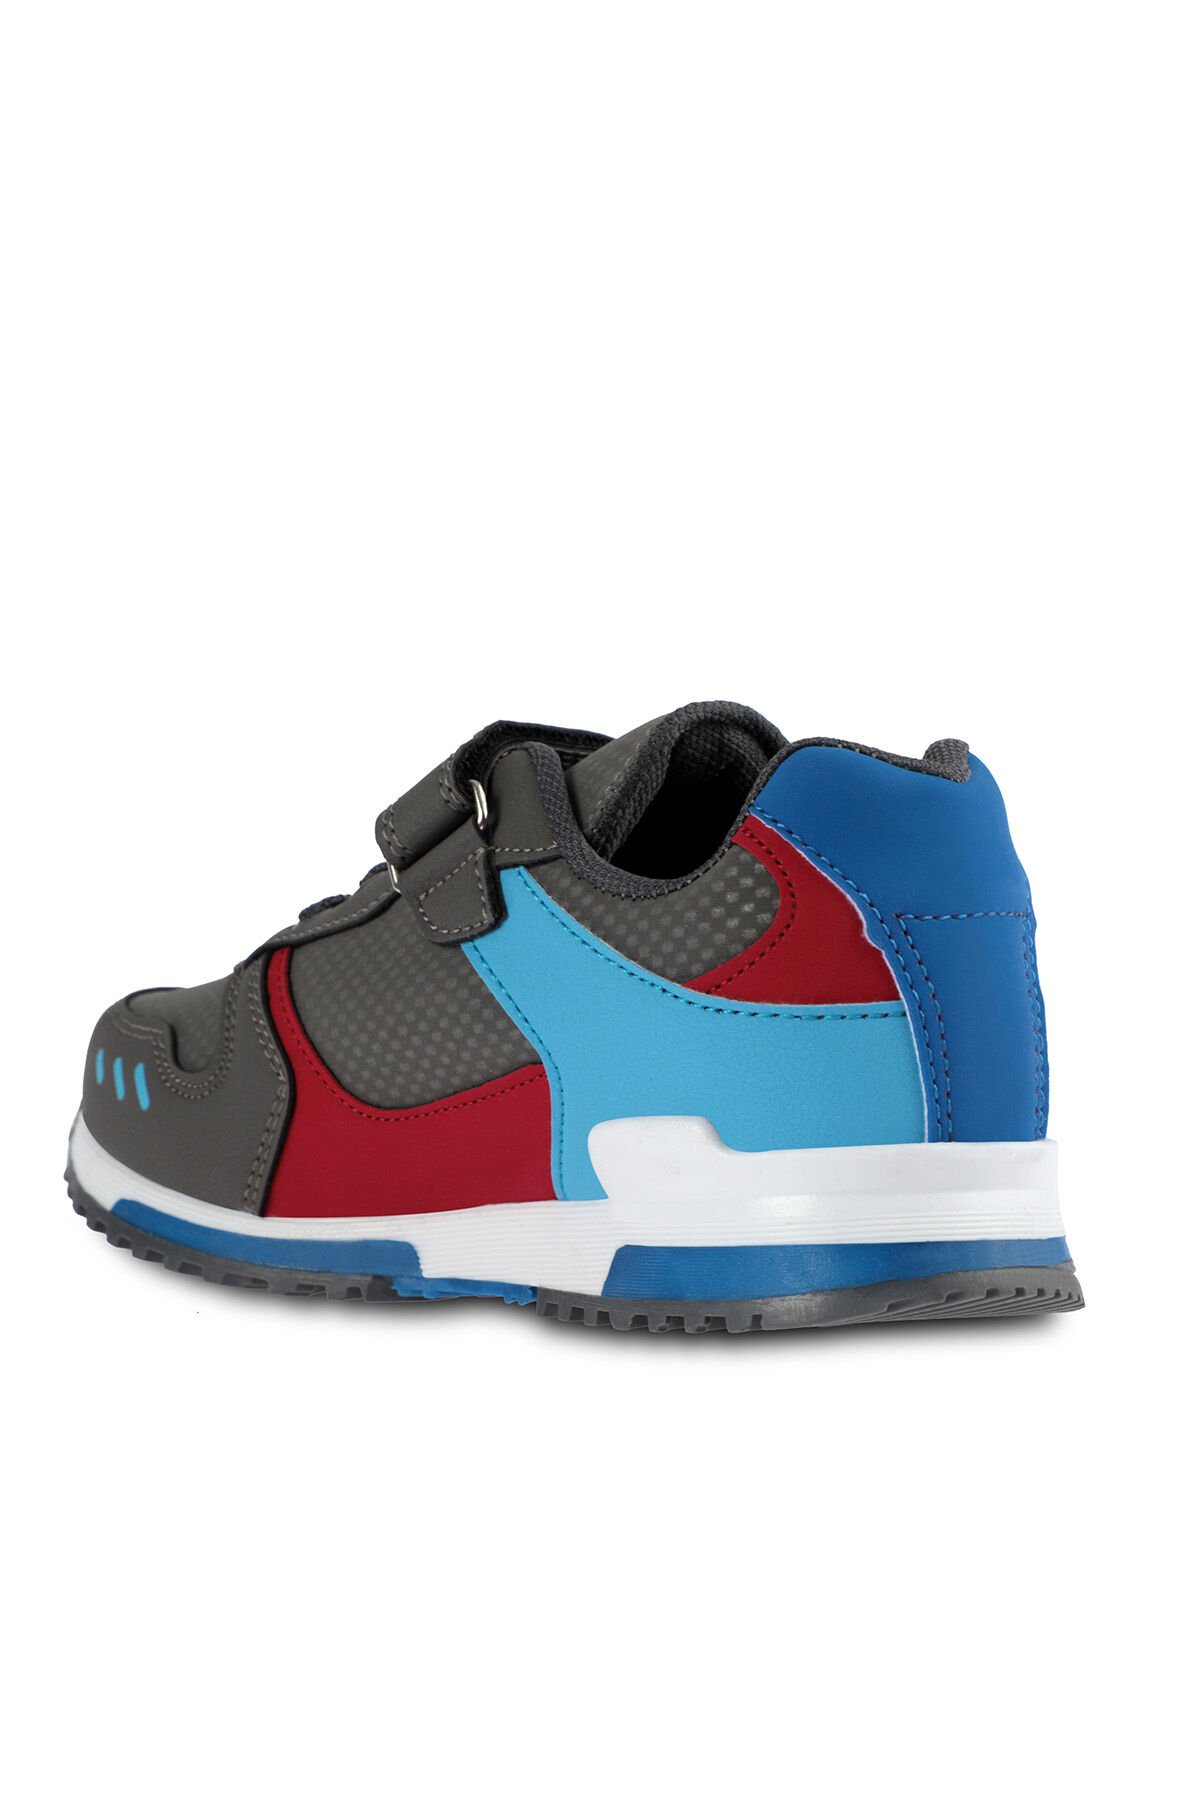 Slazenger EDMOND Sneaker Erkek Çocuk Ayakkabı Koyu Gri - Thumbnail